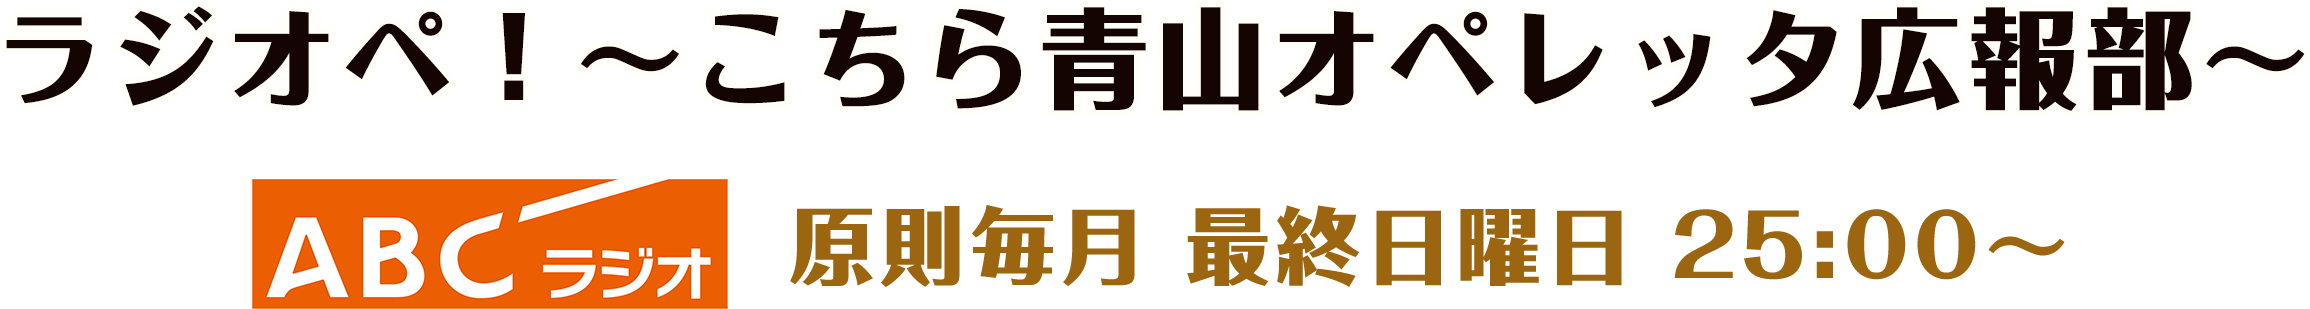 ABCラジオ/原則毎月 最終日曜日 25:00〜